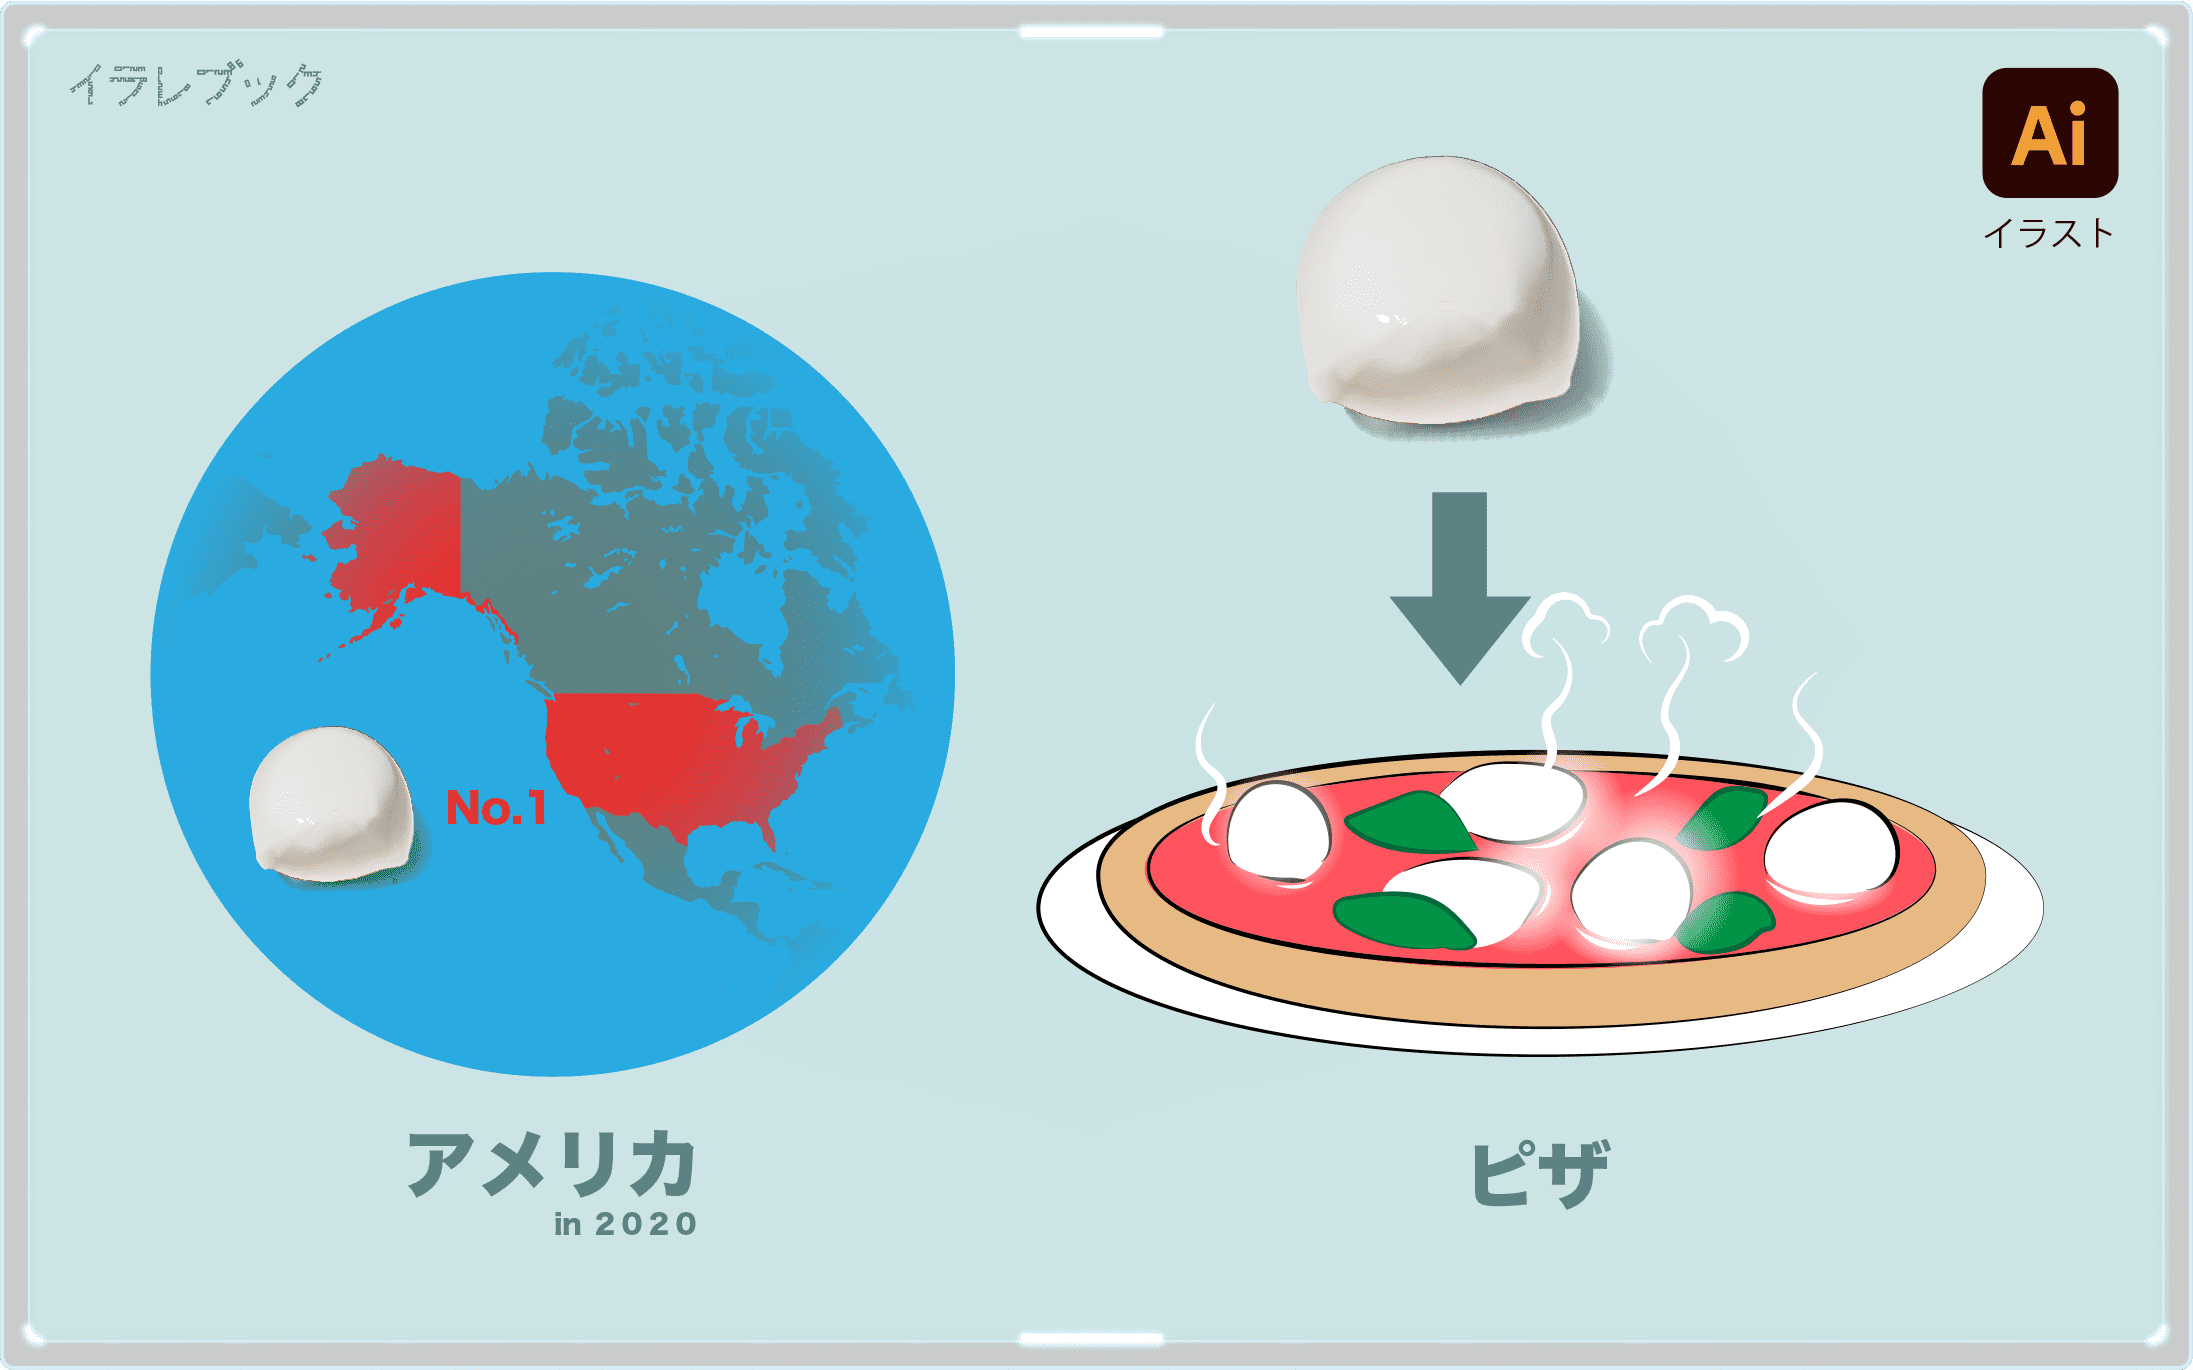 モッツァレラチーズ イラスト画像で栄養 歴史 モッツァレラの意味 美味しい食べ方 Mozzarella